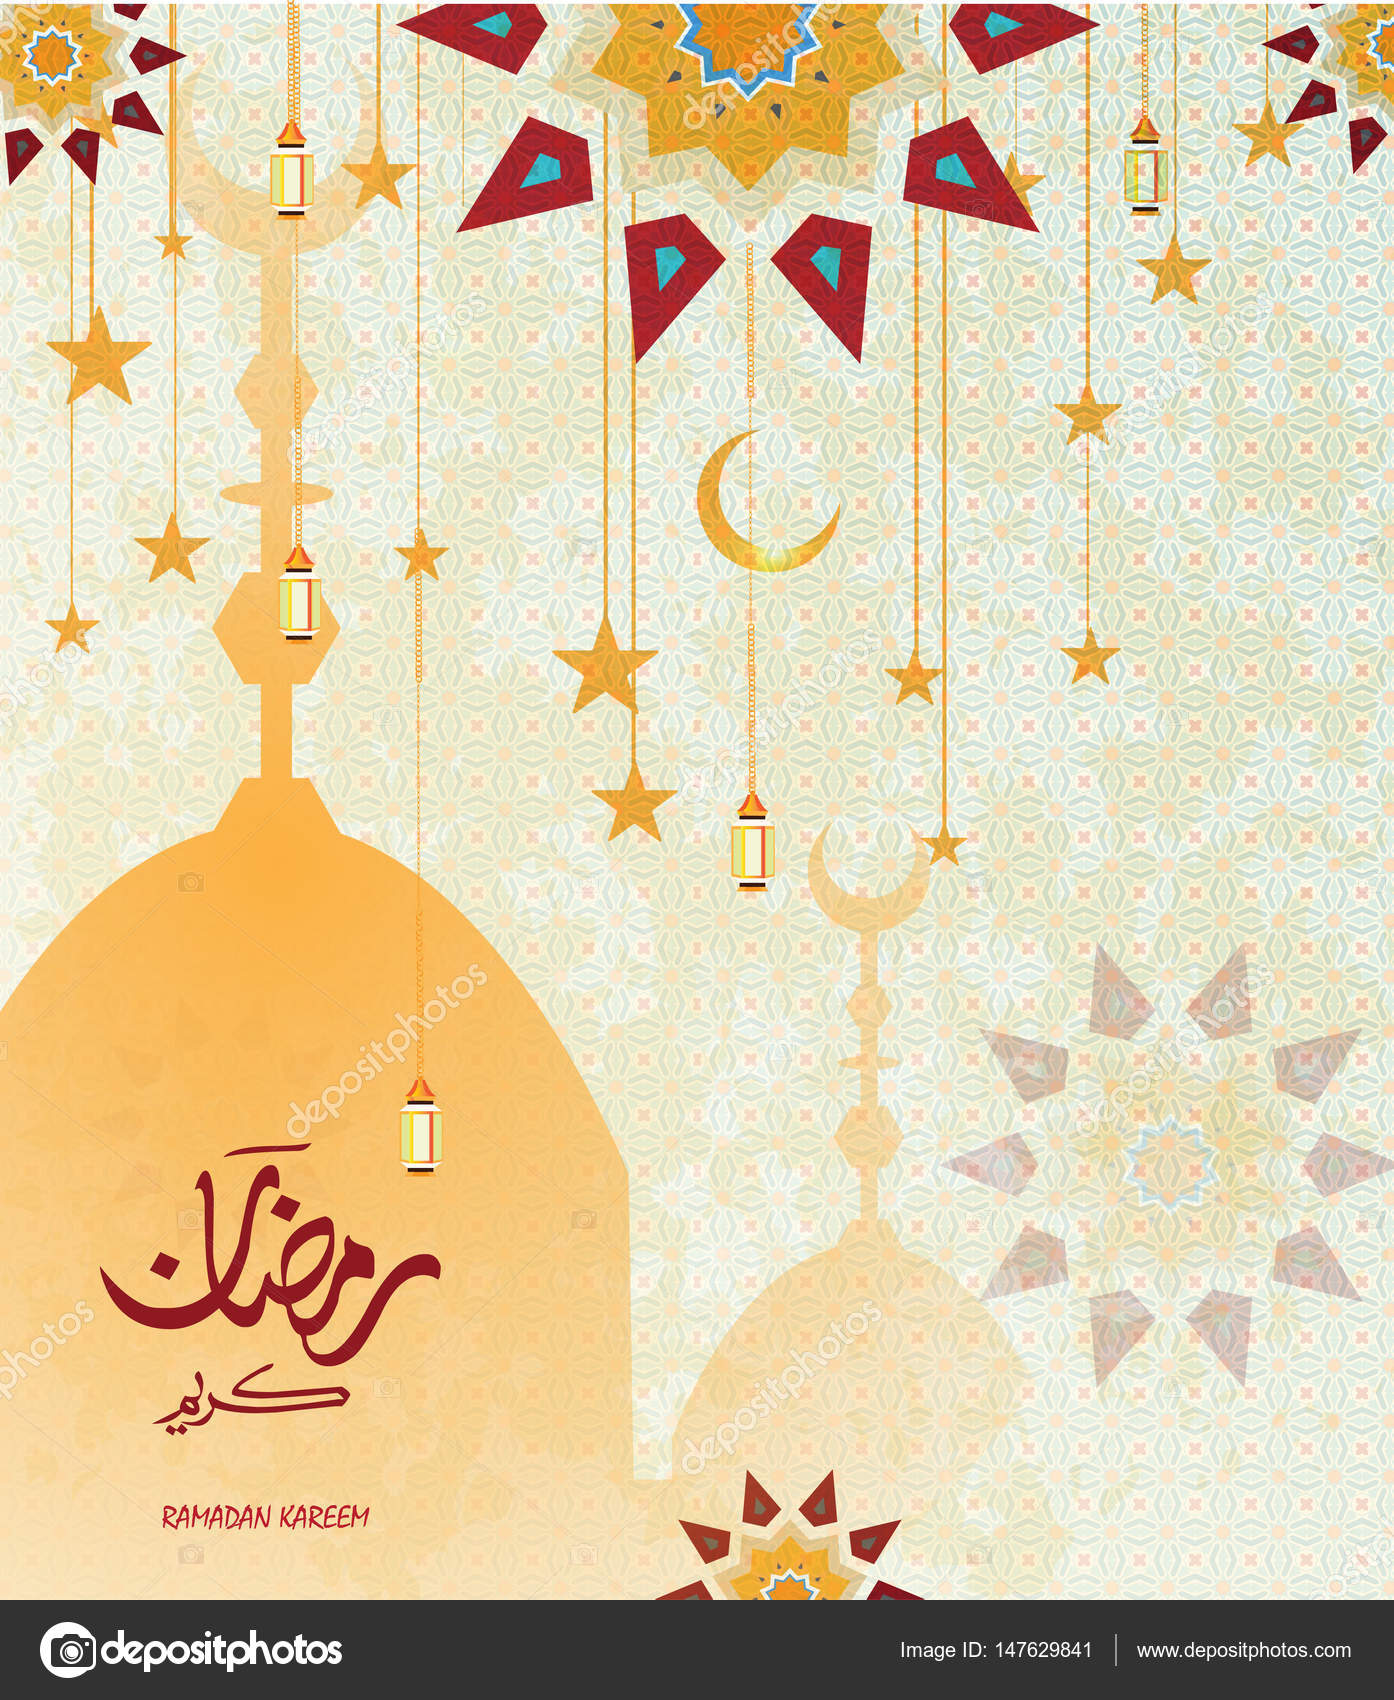 Download 900 Background Islamic Art Gratis Terbaru